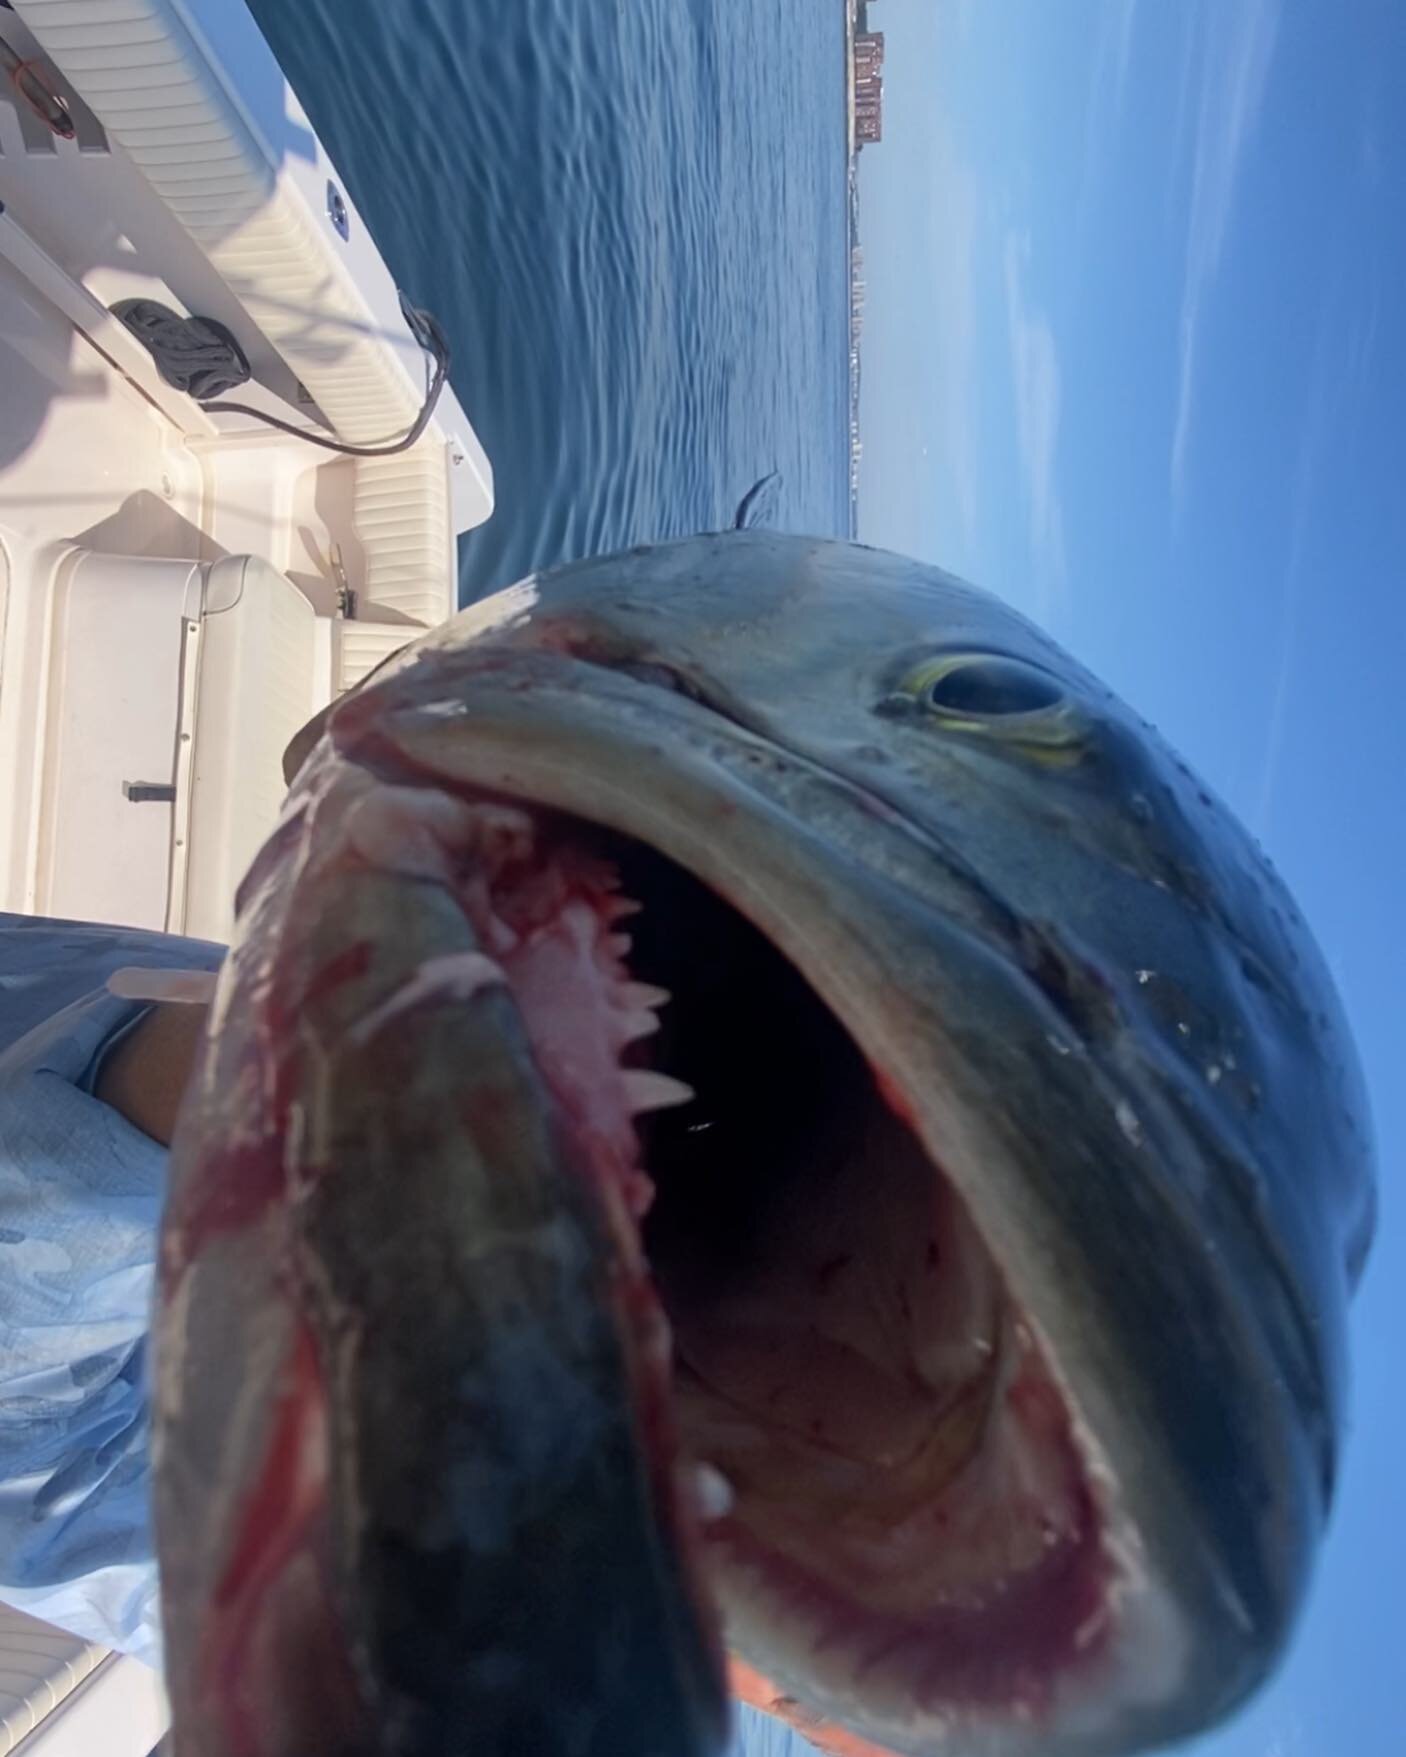 Look at those teeth!

#lifebyz 
#fishing 
#bostonharbor 
#gradywhite 
#pennreels